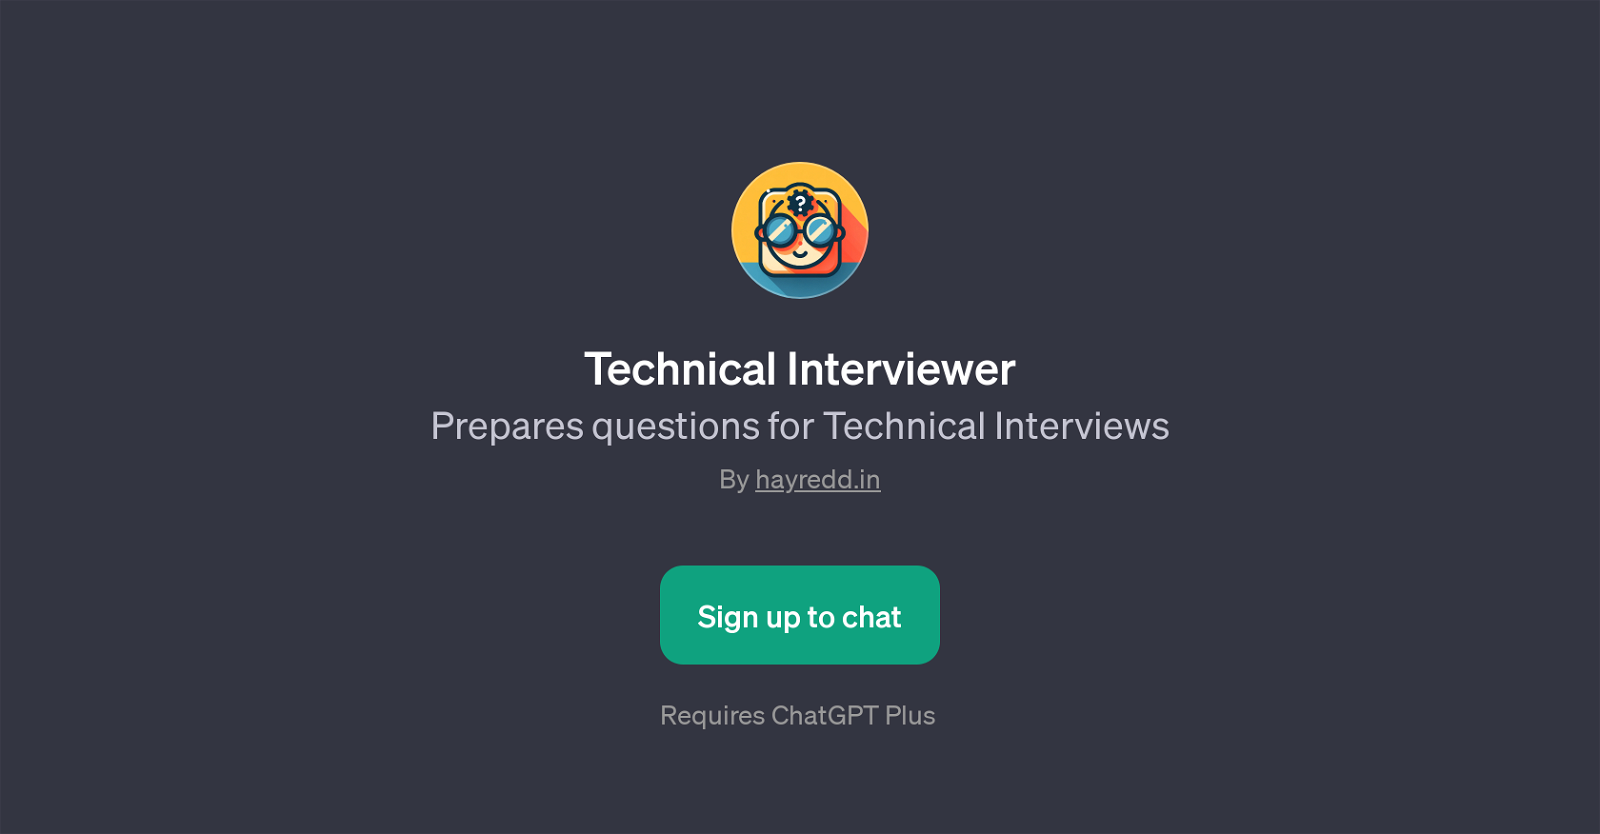 Technical Interviewer website